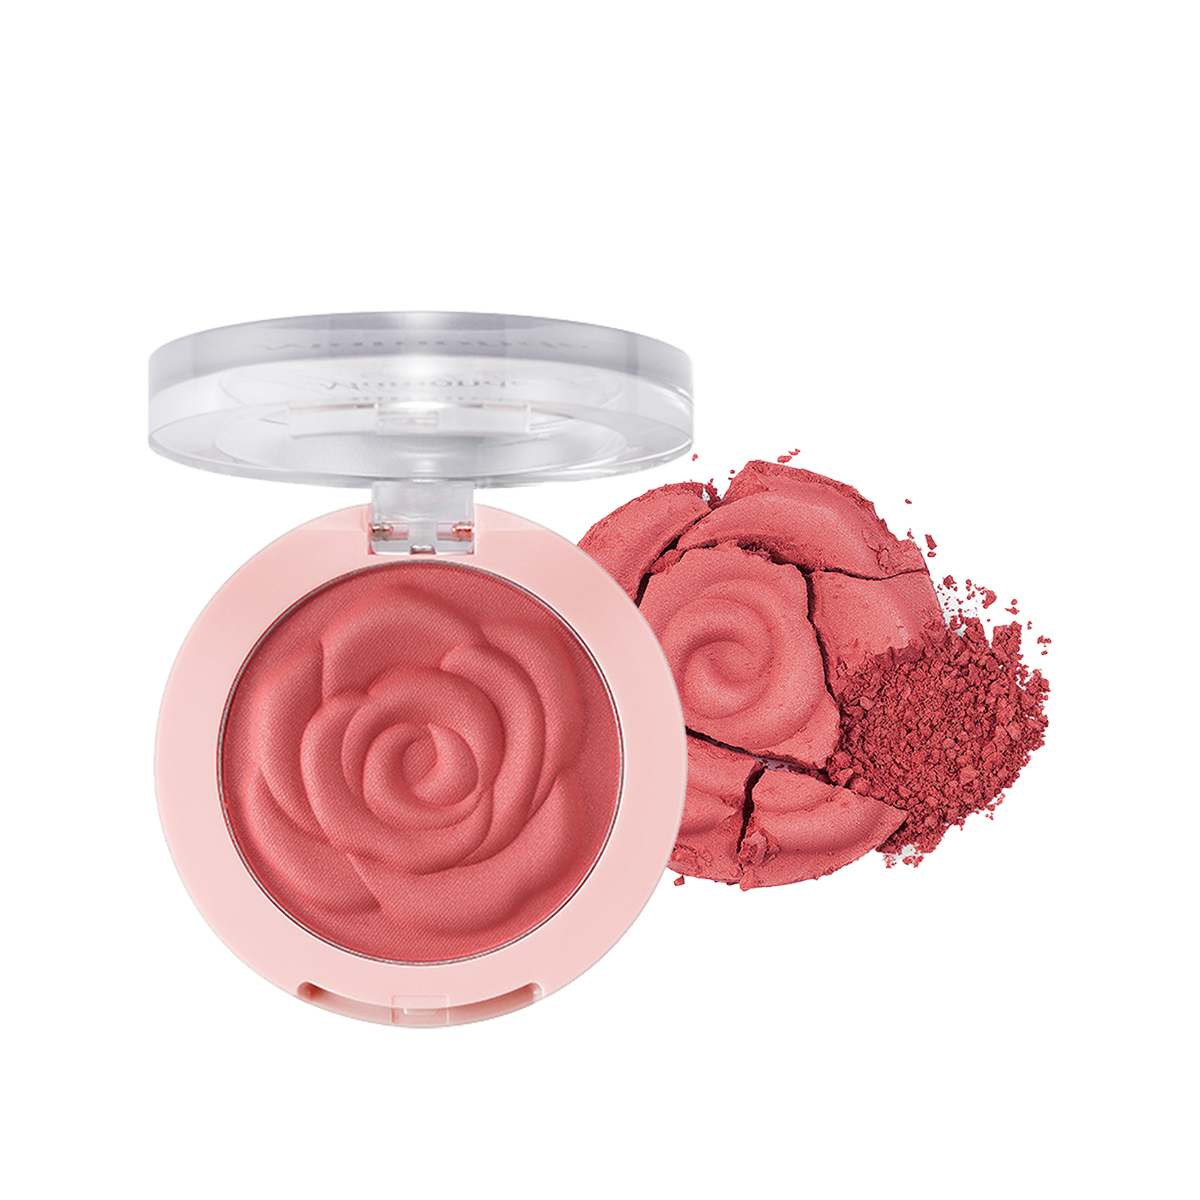 Hình ảnh Phấn má ửng sắc hồng Mamonde Flower Pop Blusher 8g